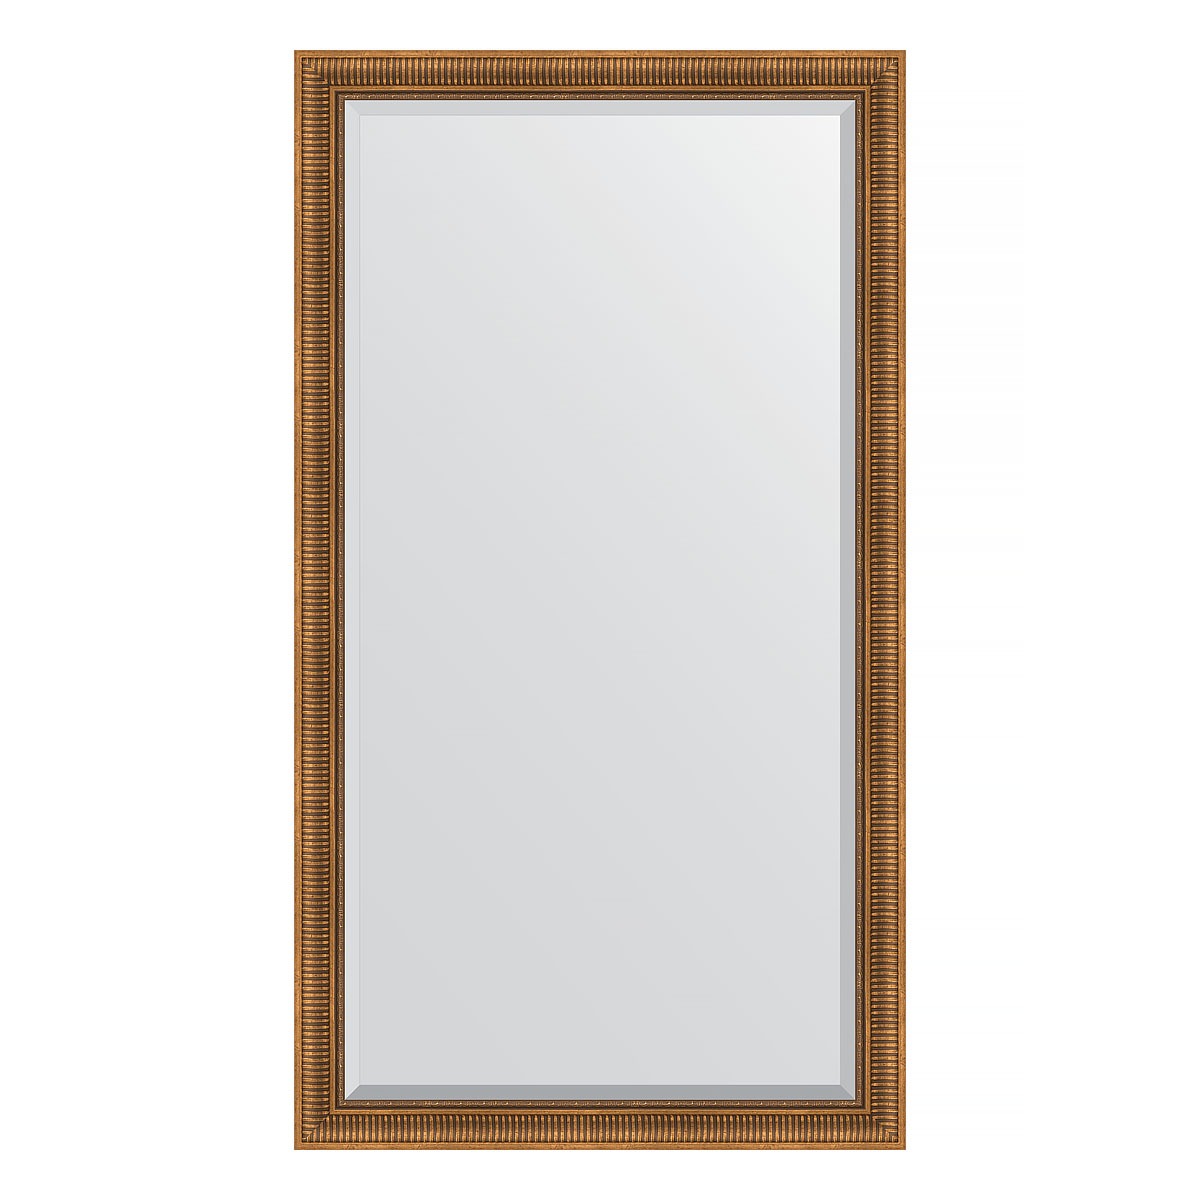 Зеркало напольное с фацетом в багетной раме Evoform бронзовый акведук 93 мм 112x202 см зеркало напольное с фацетом в багетной раме серебряный акведук 93 мм 112x202 см